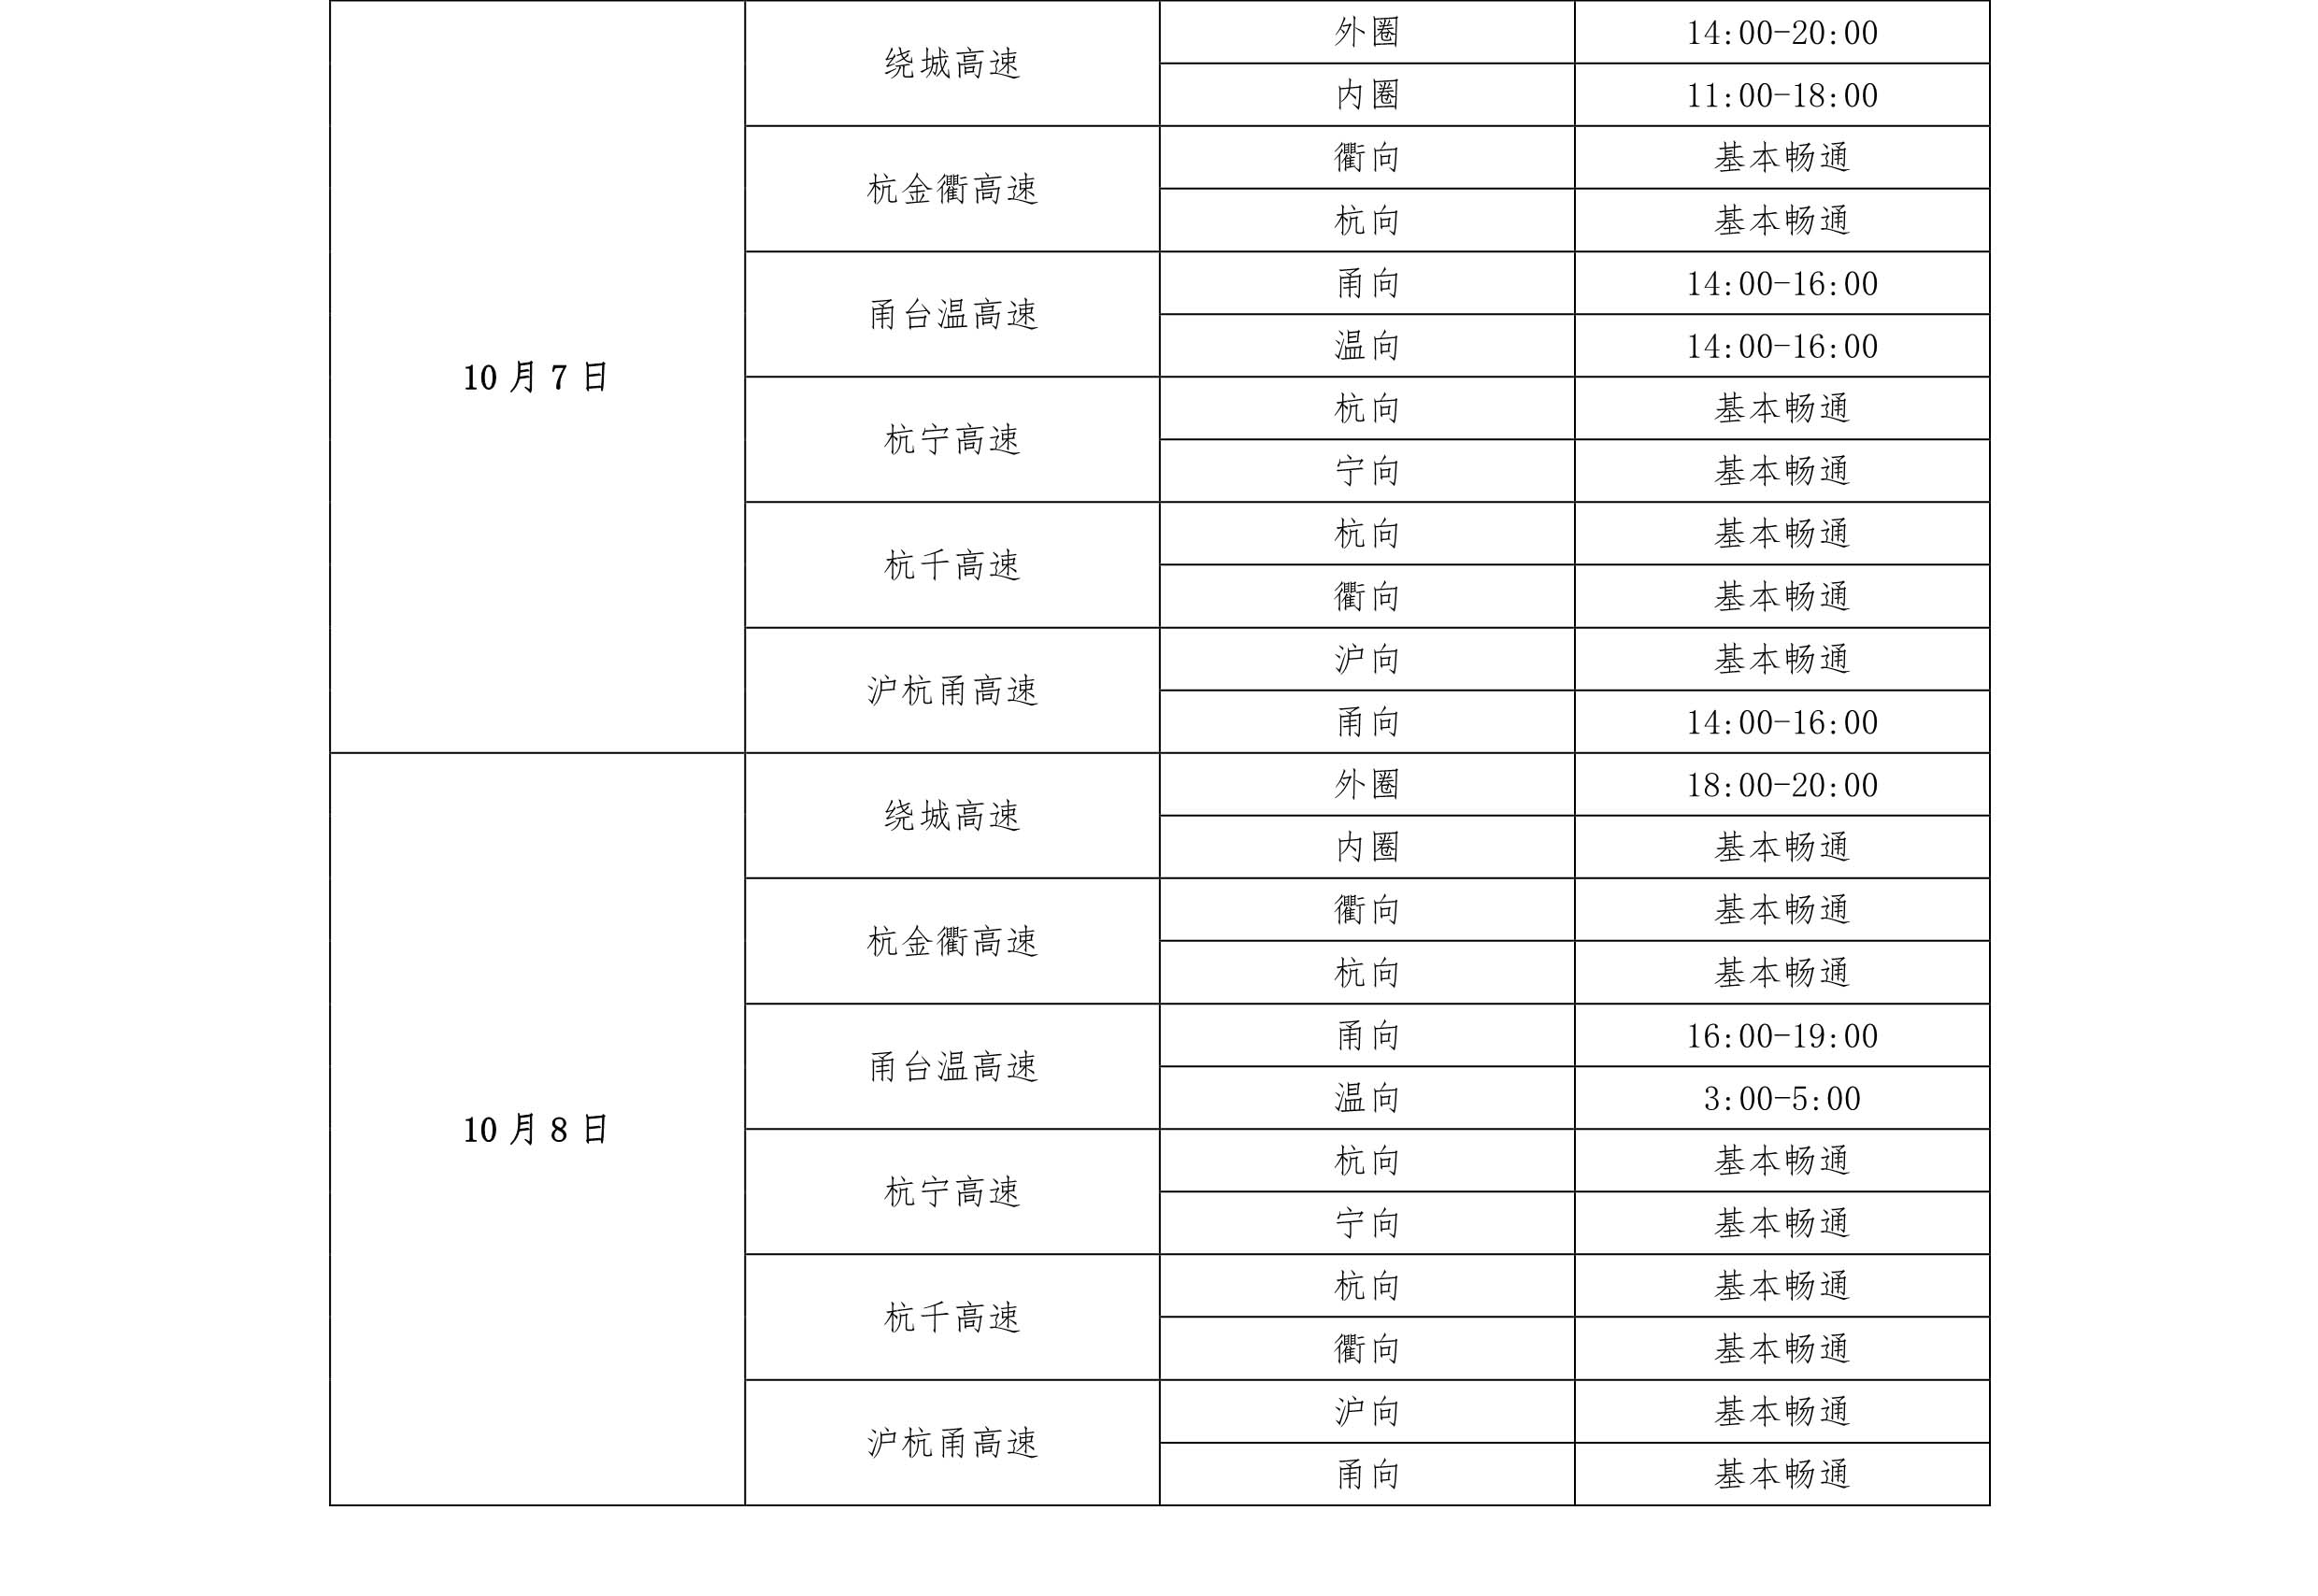 10月7日和8日两天高速拥堵时间分布预测（浙江省交通运输厅官方网站）.jpg